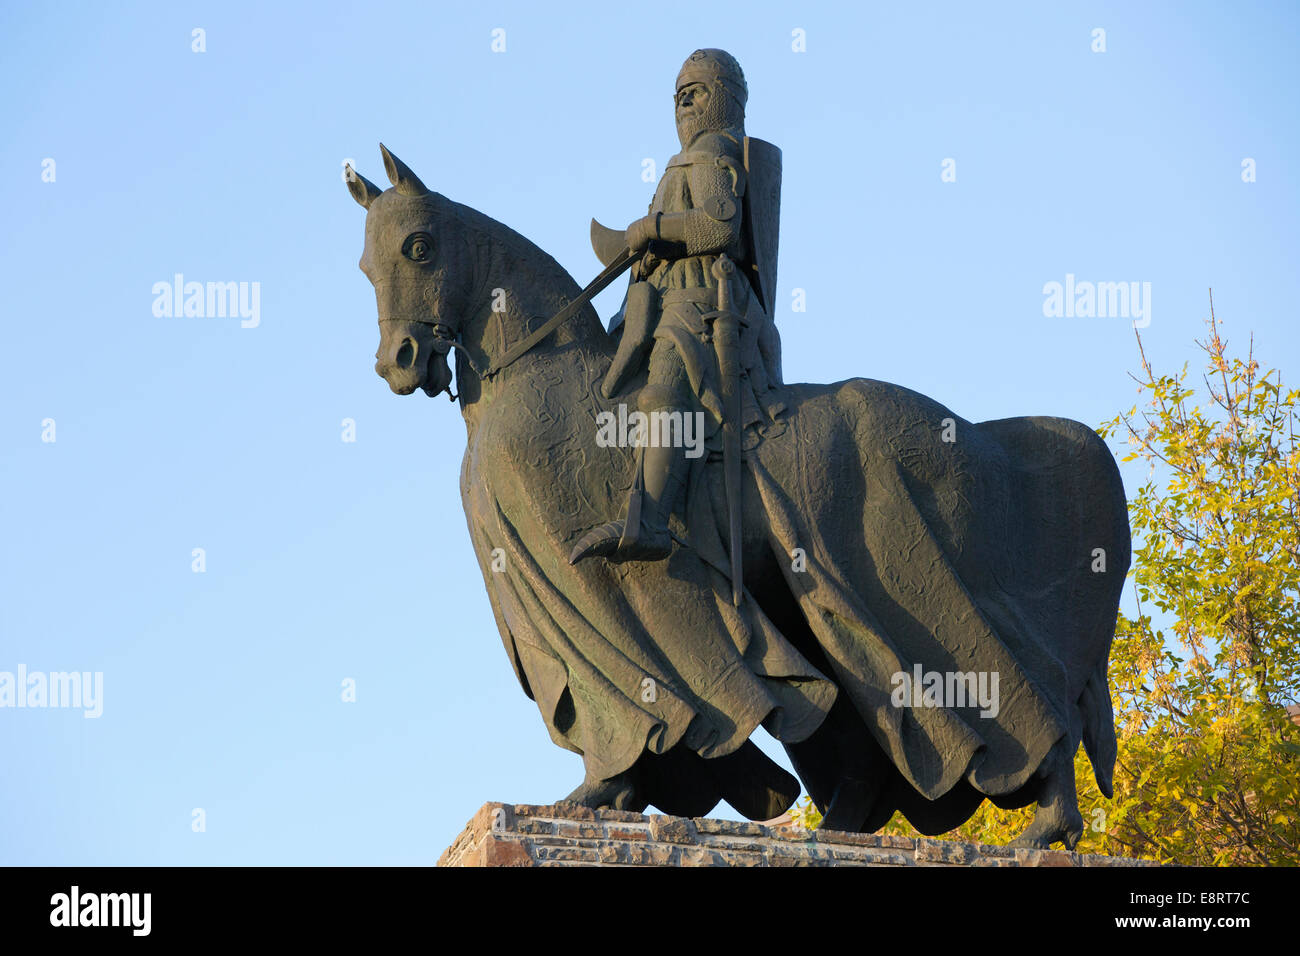 Bronzestatue von Robert dem Bruce König der Schotten zu Pferd, die an die Schlacht von Bannockburn erinnert. Sowohl Mann als auch Pferd tragen eine Ganzkörperpanzerung. Stockfoto